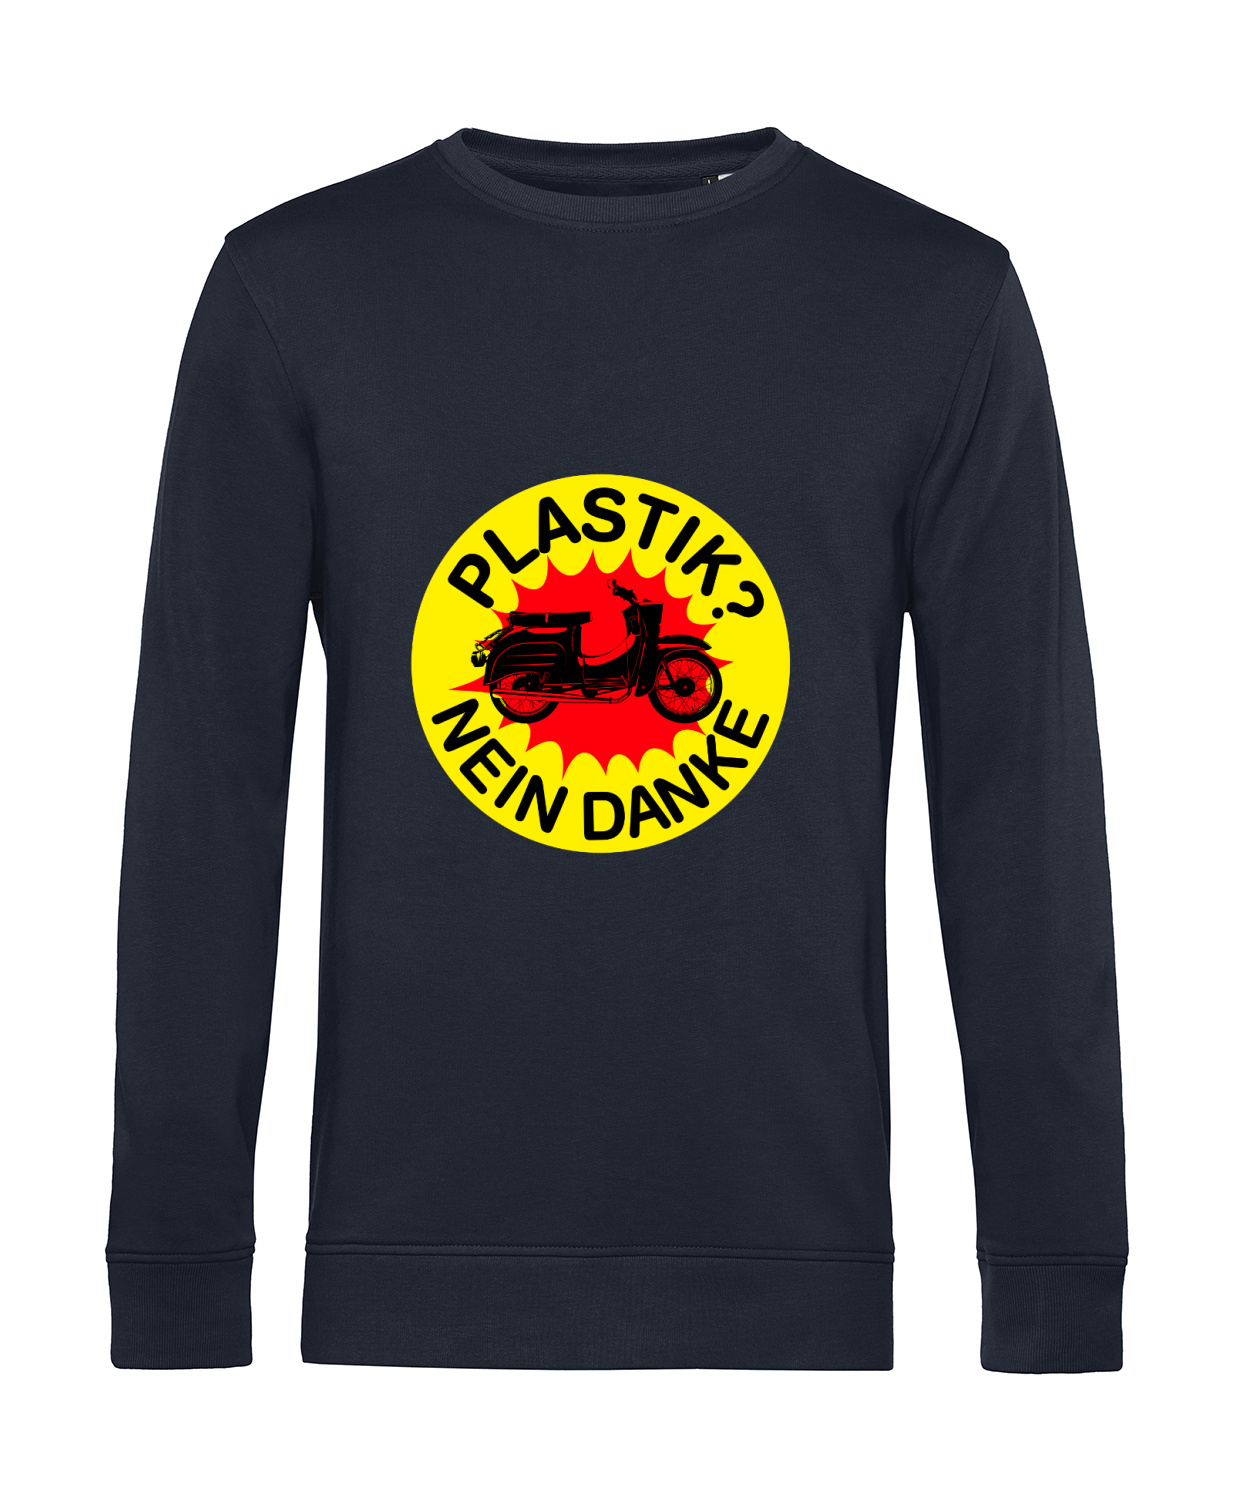 Nachhaltiges Sweatshirt Herren 2Takter - Plastik Nein Danke Schwalbe